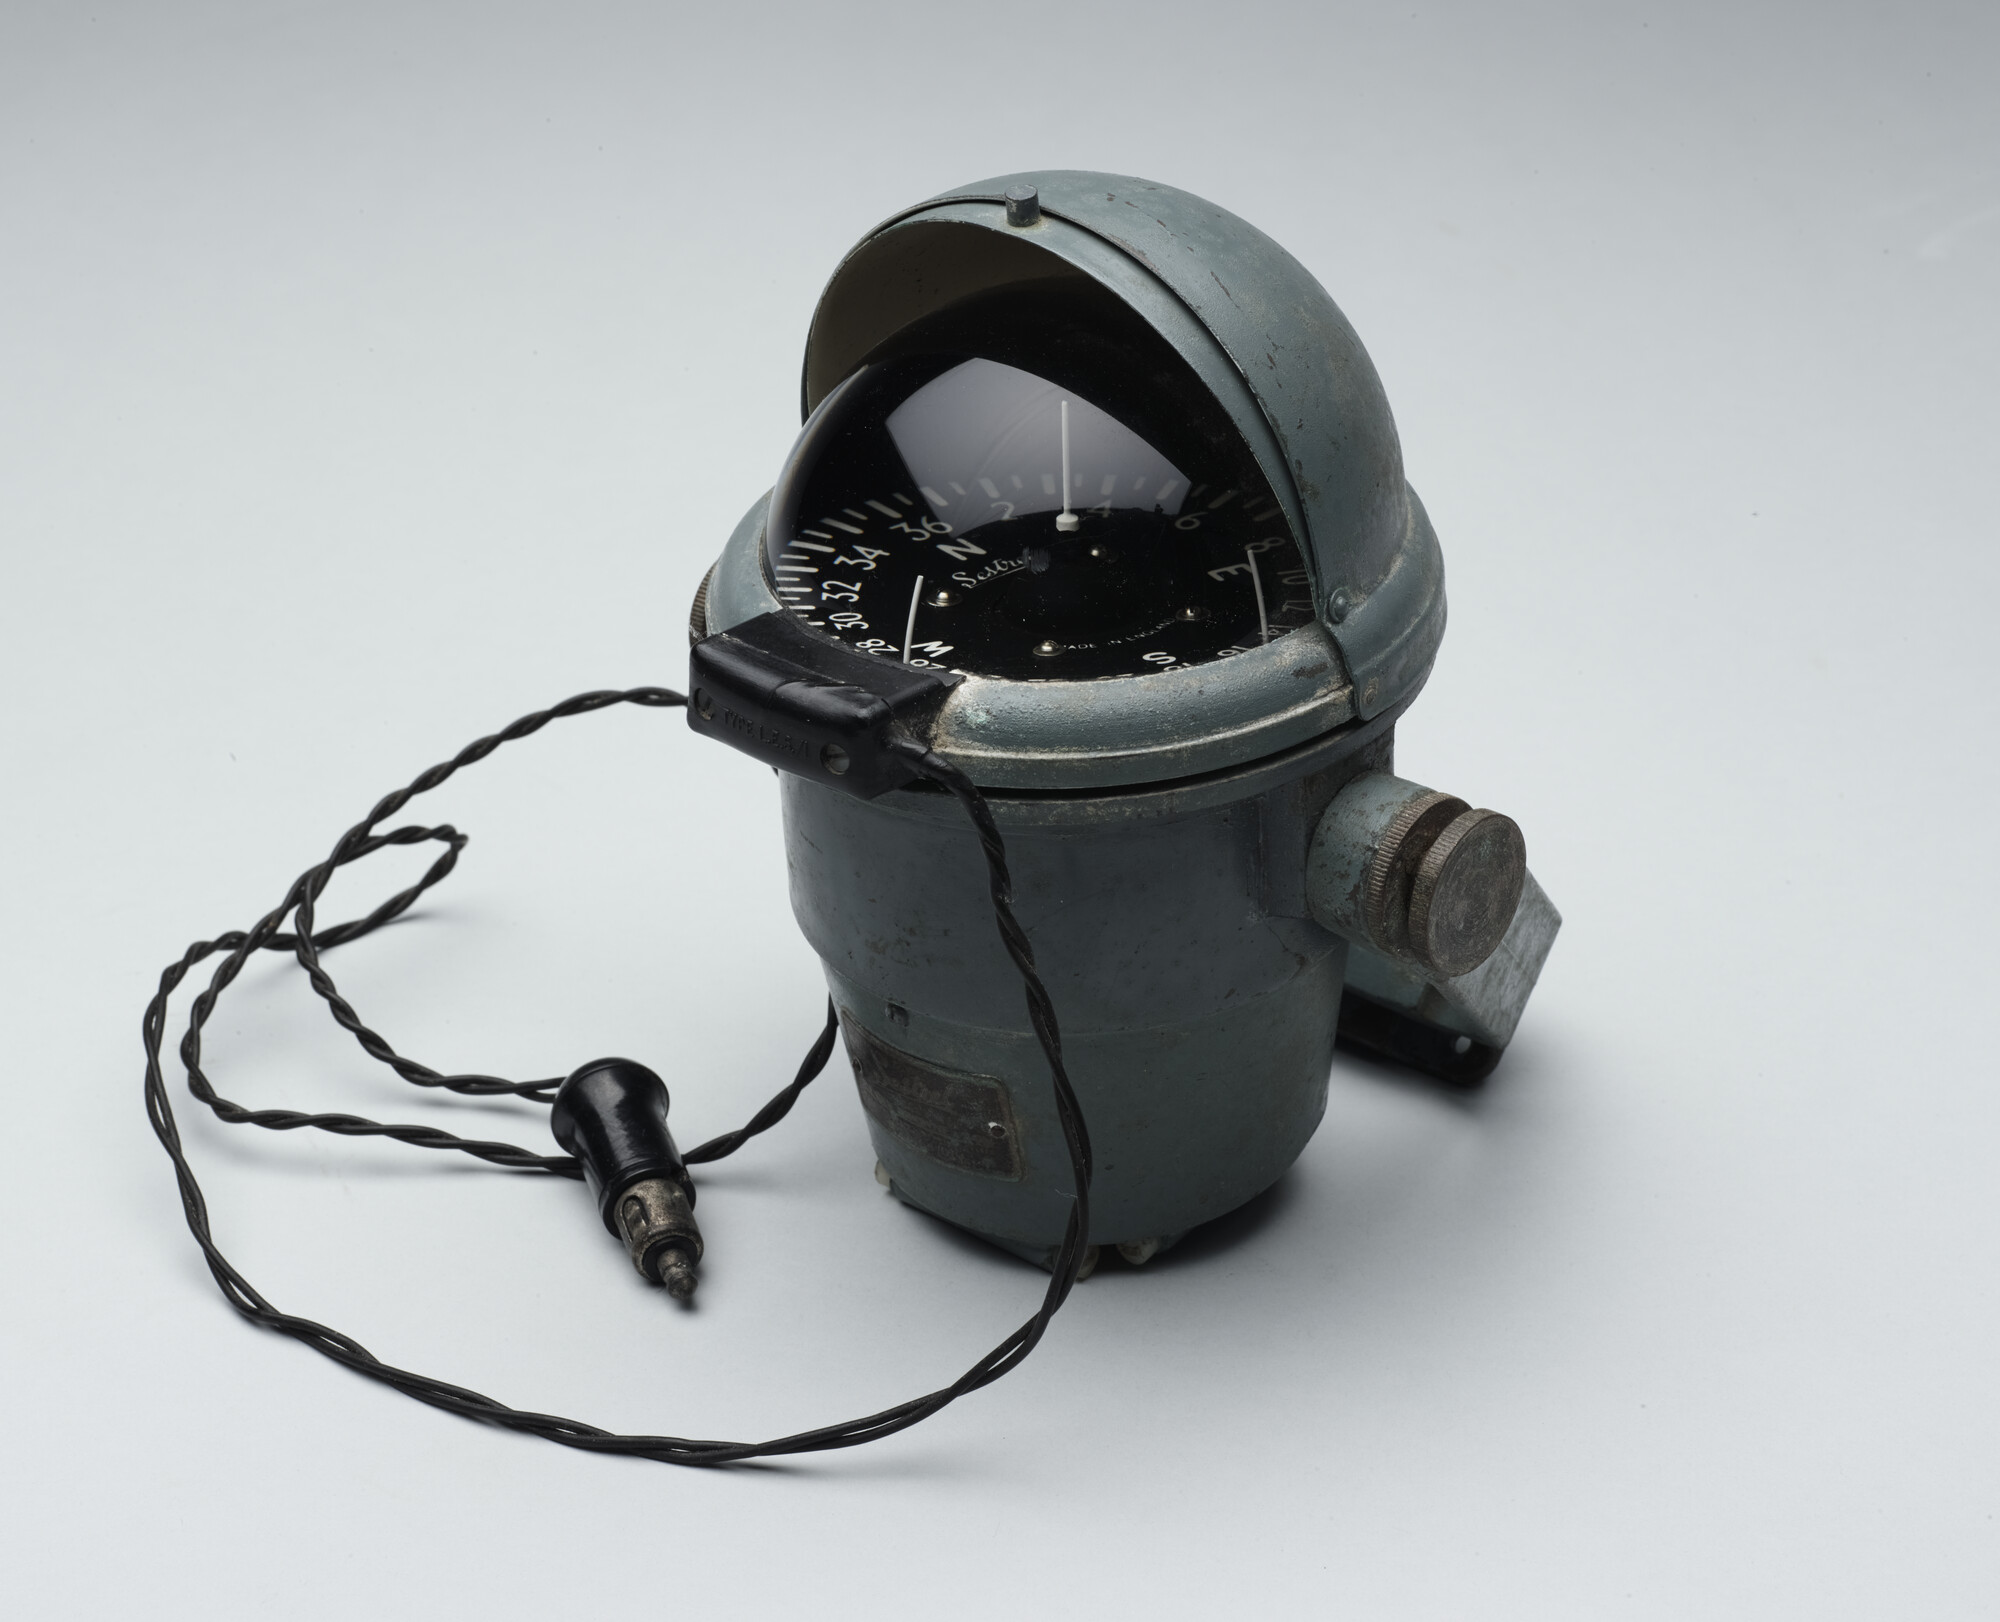 2019.1055-03; Sestrel vloeistofkompas. Onderdeel van de uitrusting gebruikt door Herman Jansen aan boord van de Sounion; kompas